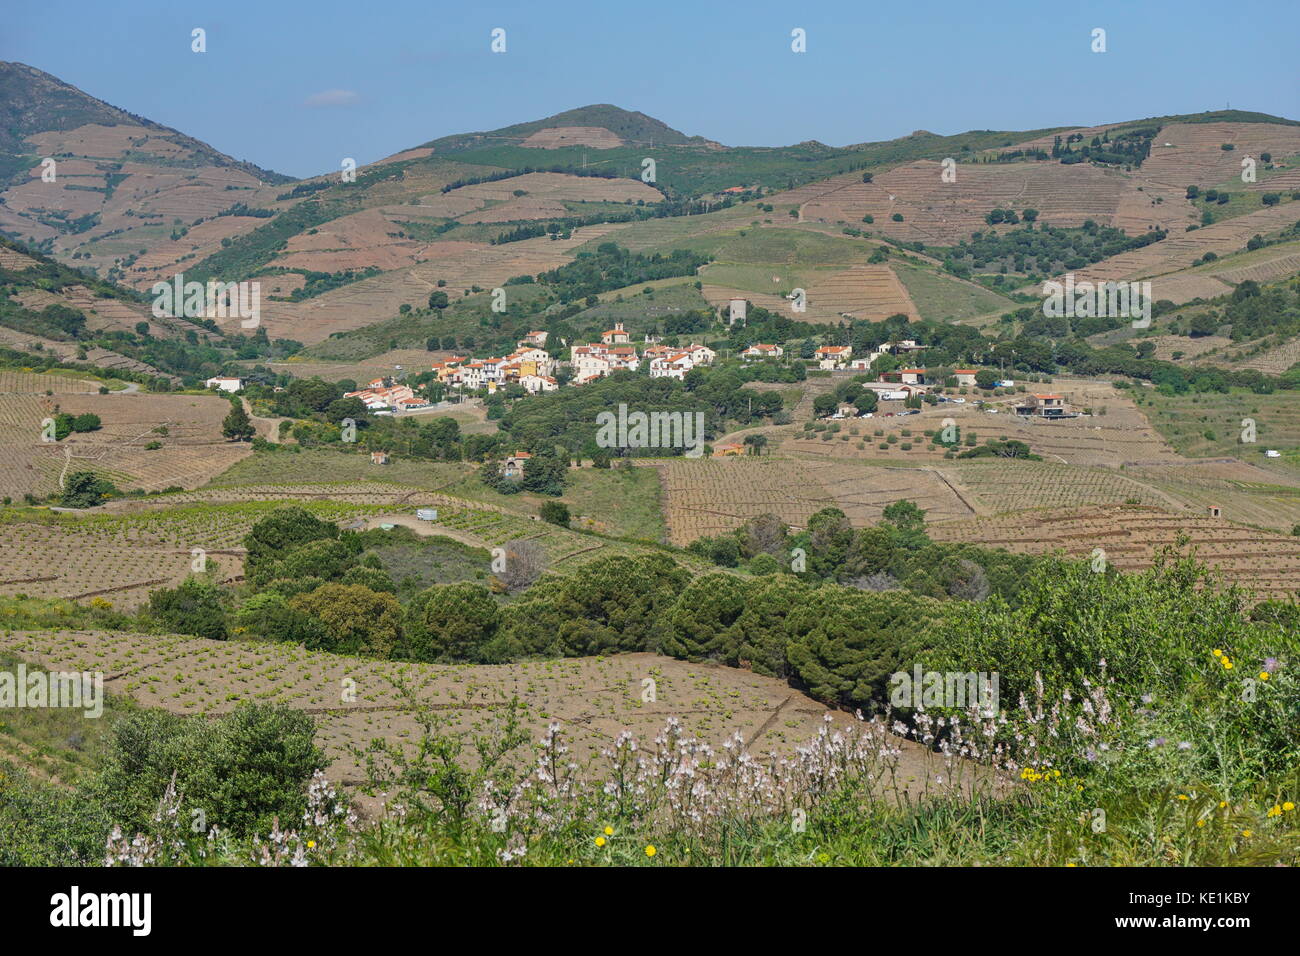 Frankreich Land Landschaft der mediterranen Dorf cosprons und Weinbergen, Feldern, Languedoc Roussillon, Pyrenees Orientales Stockfoto